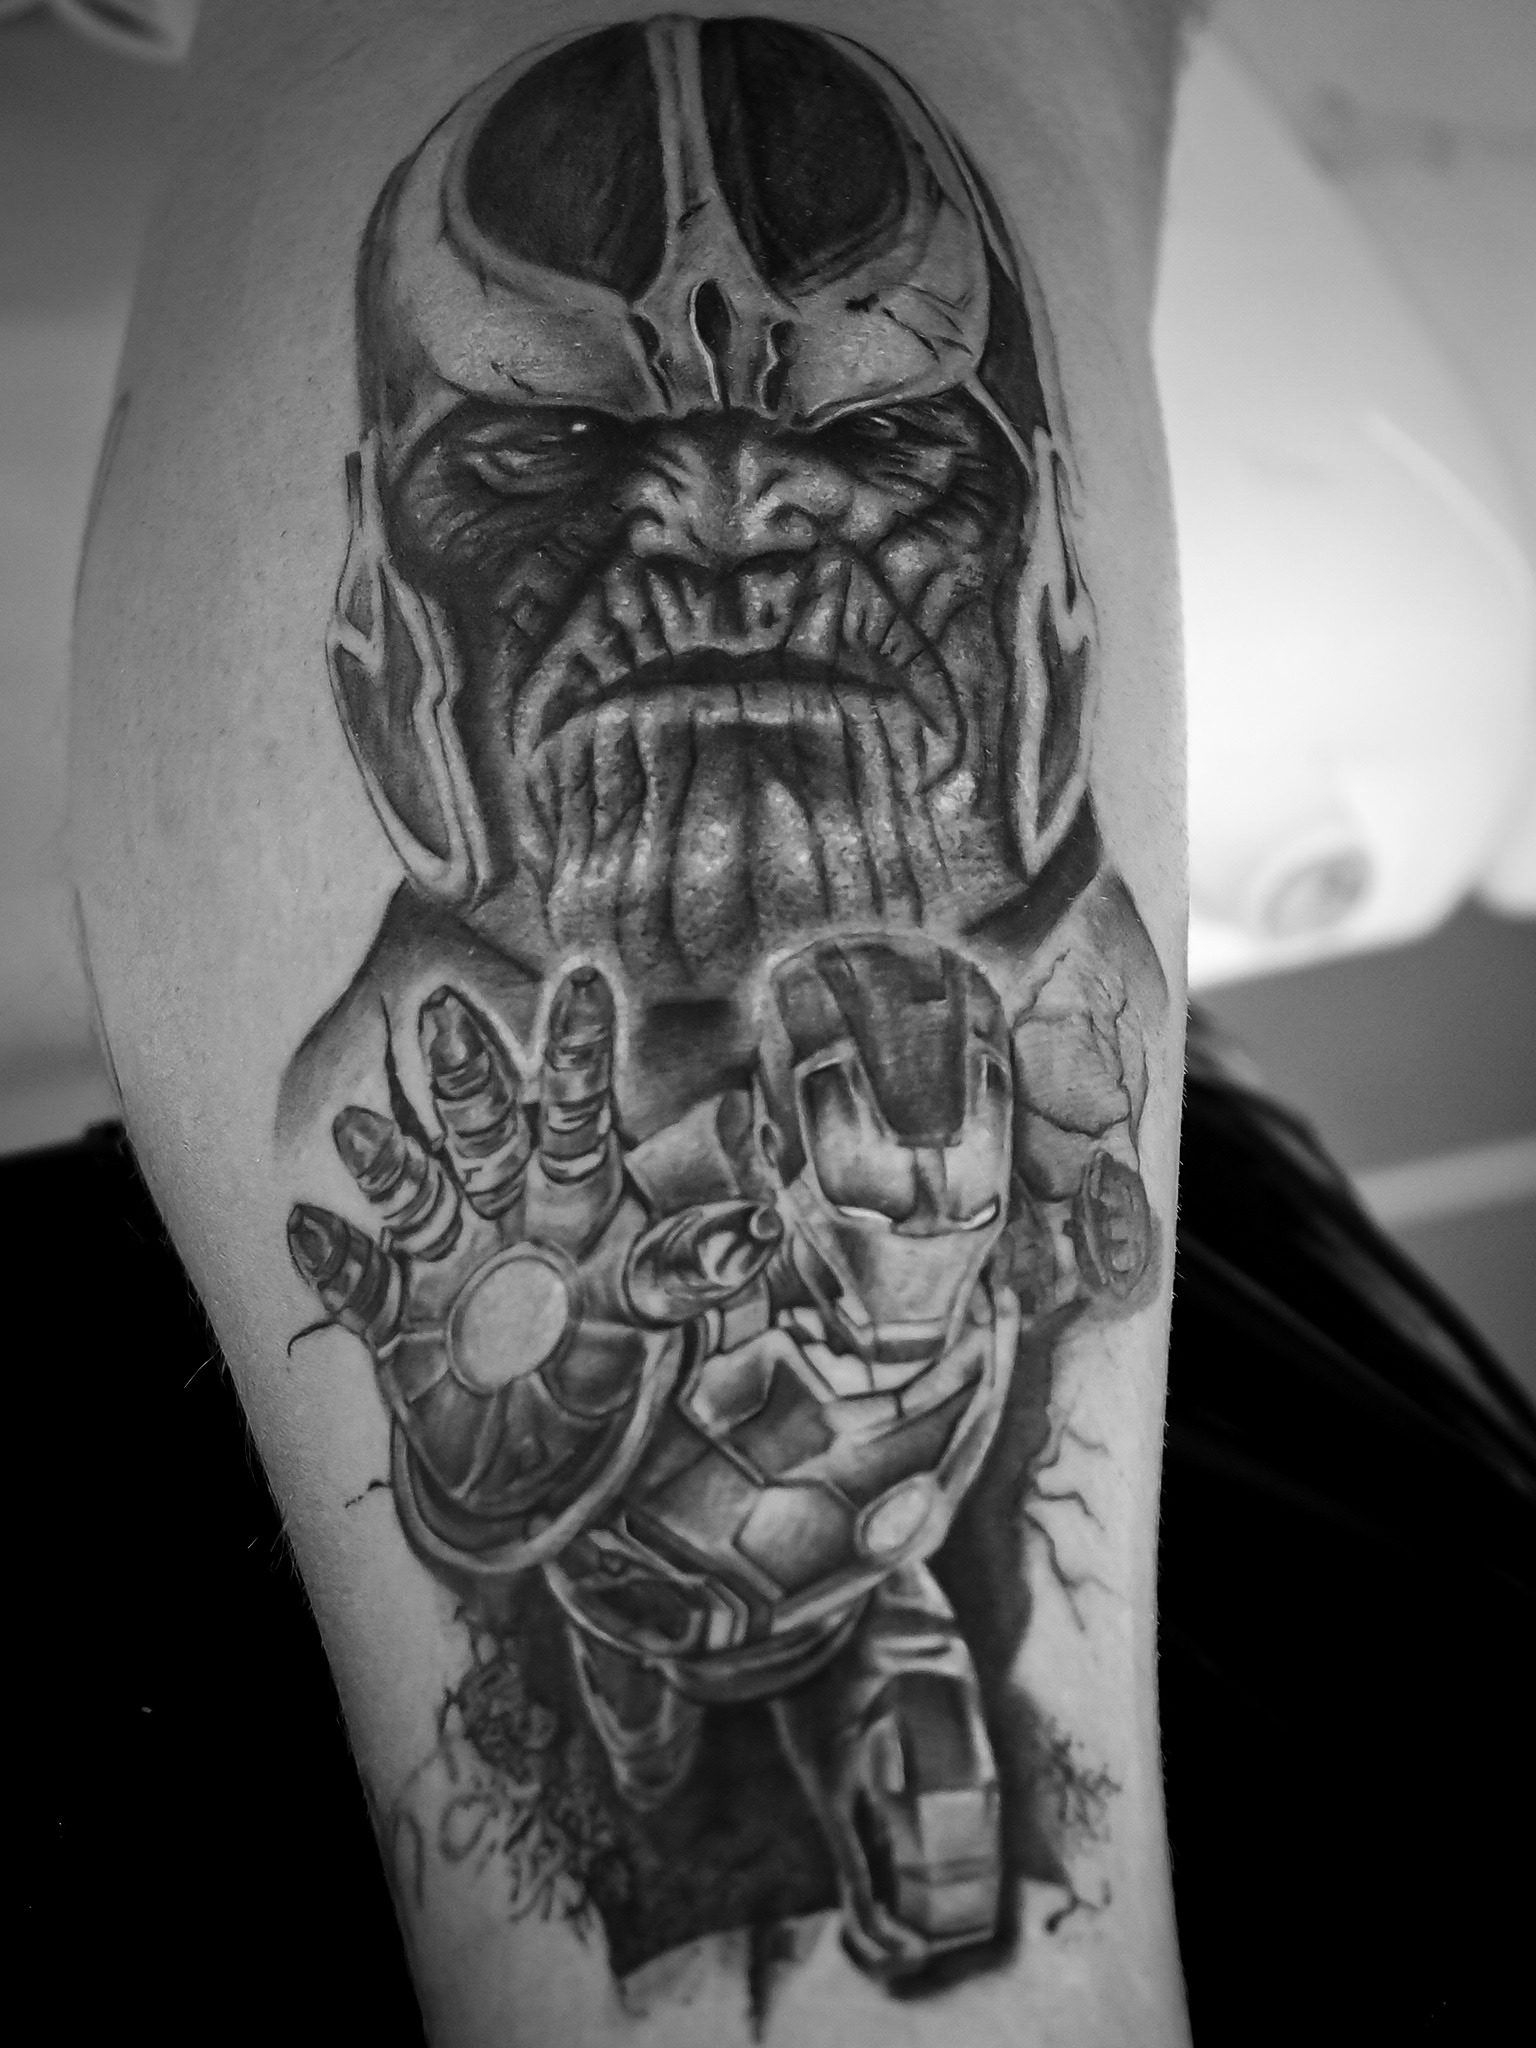 Tatuaż realistyczny przedstawiający postaci z Marvela